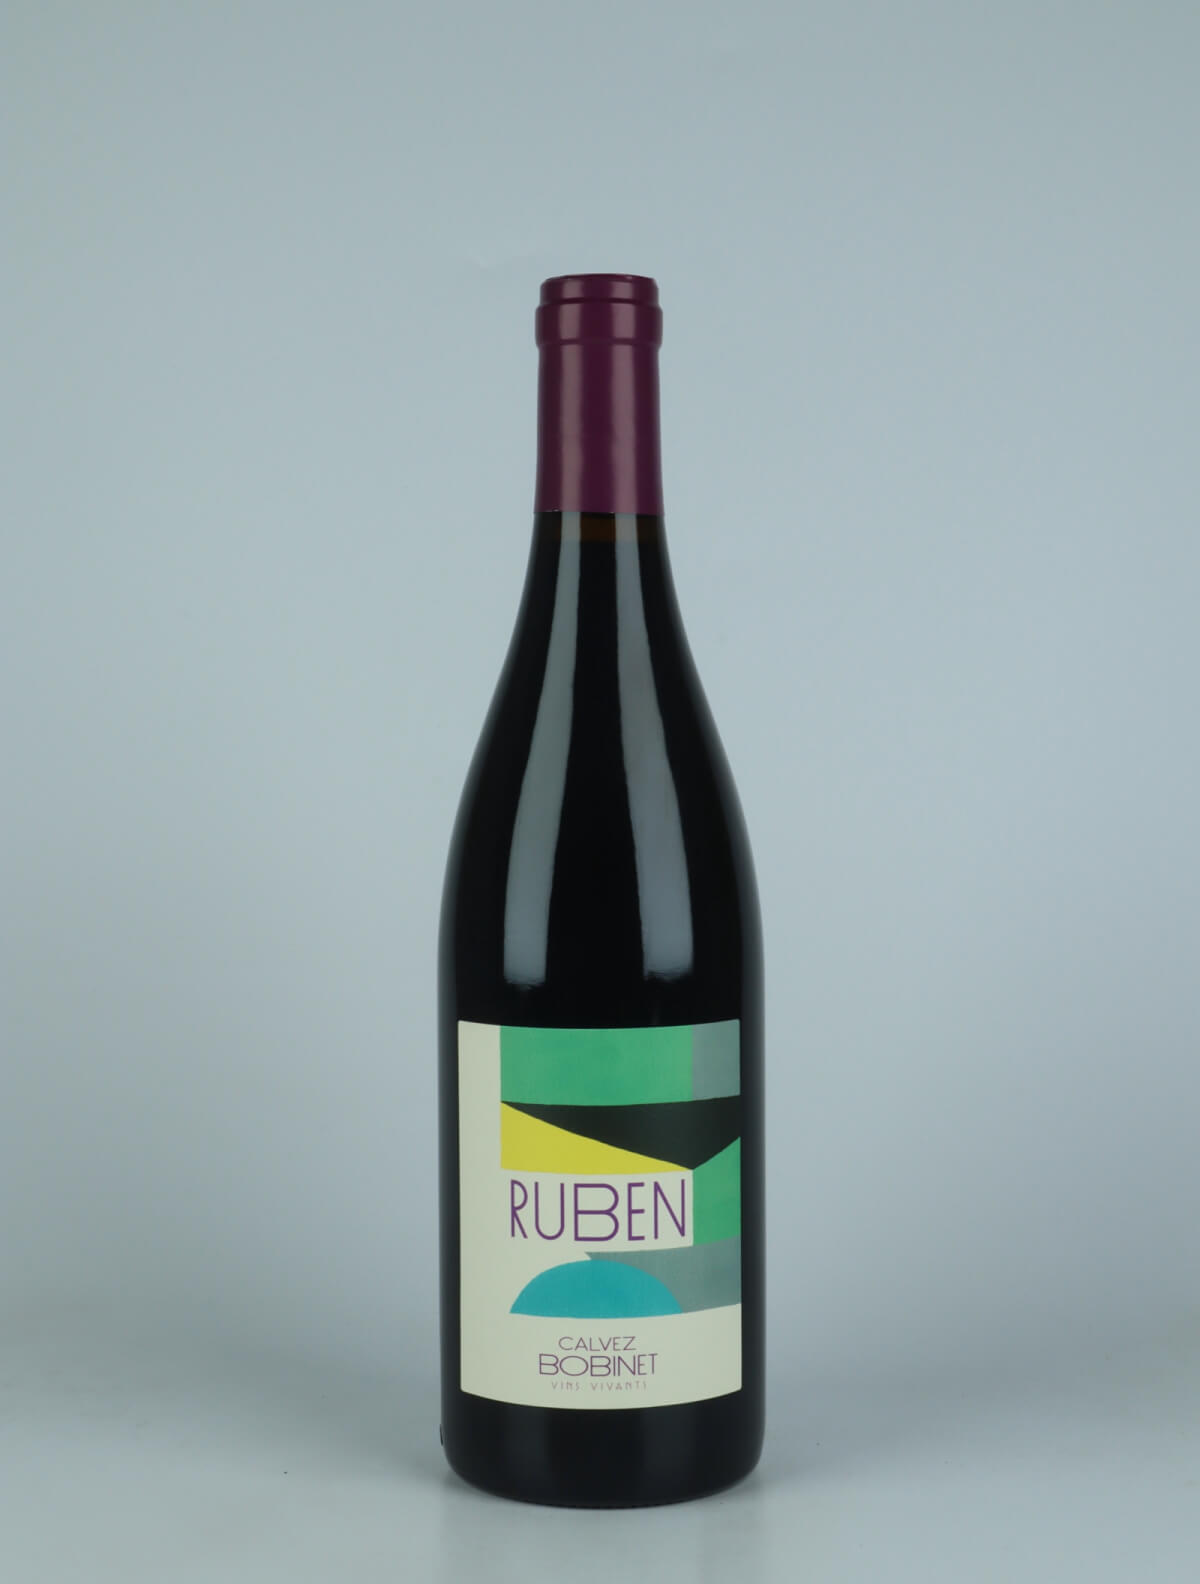 A bottle 2020 Ruben Red wine from Domaine Bobinet, Loire in France